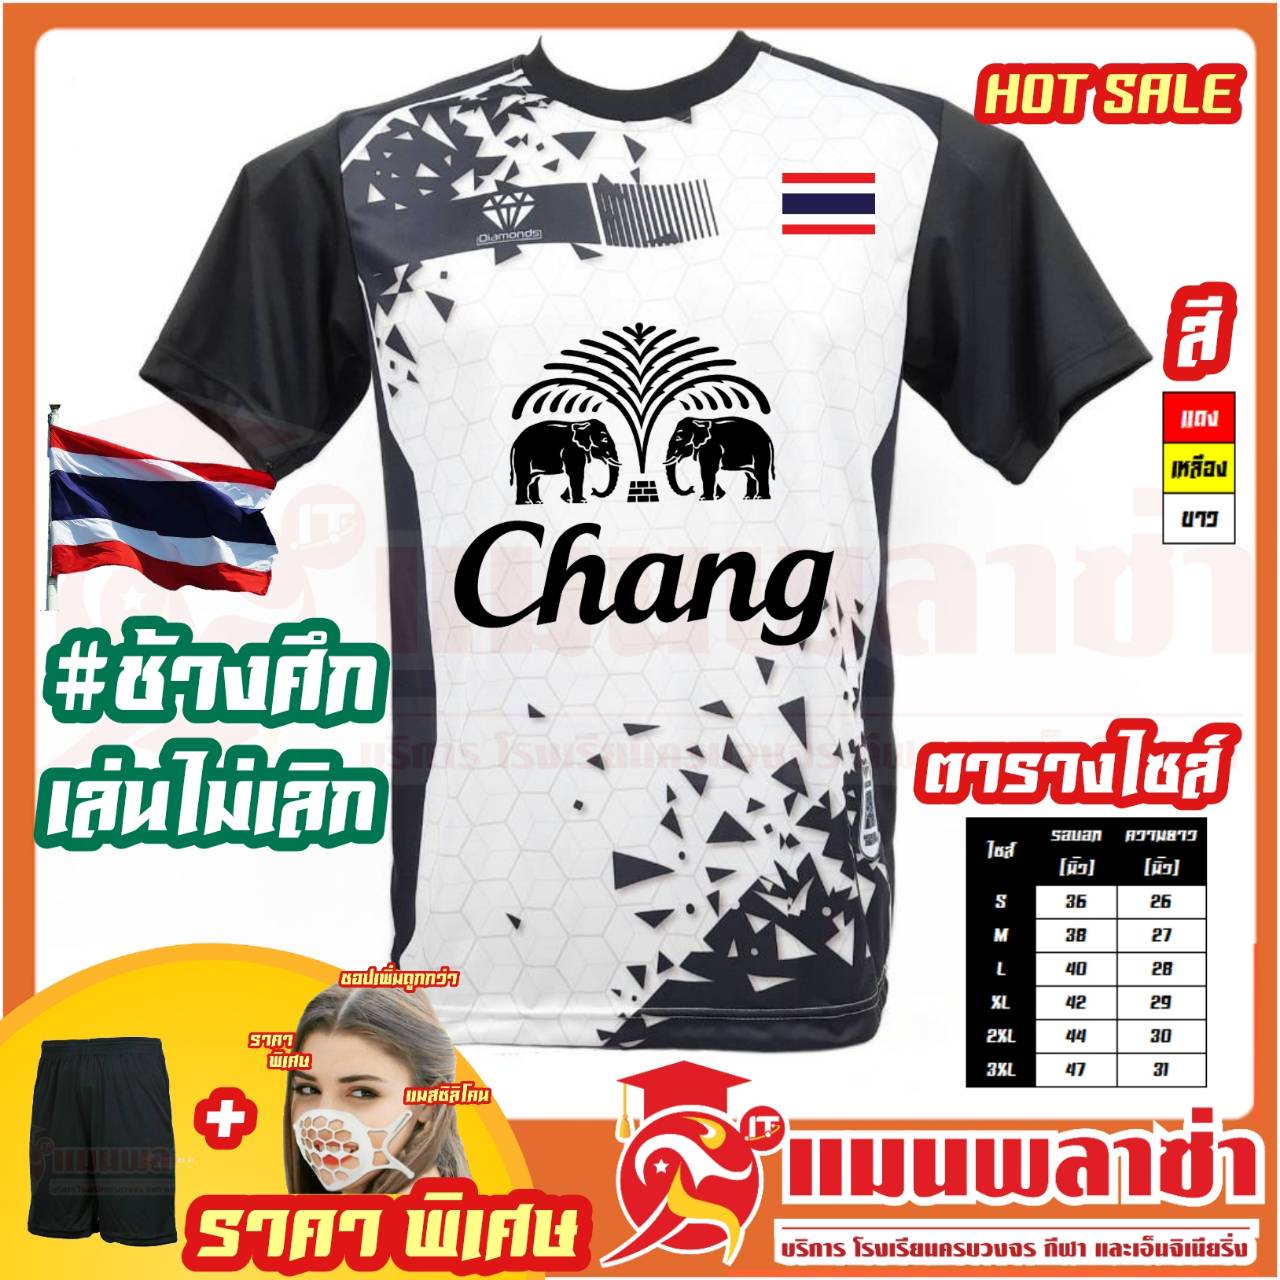 เสื้อกีฬา Diamond สกรีน ธงชาติ ช้างศึกเล่นไม่เลิก ทีมชาติไทย